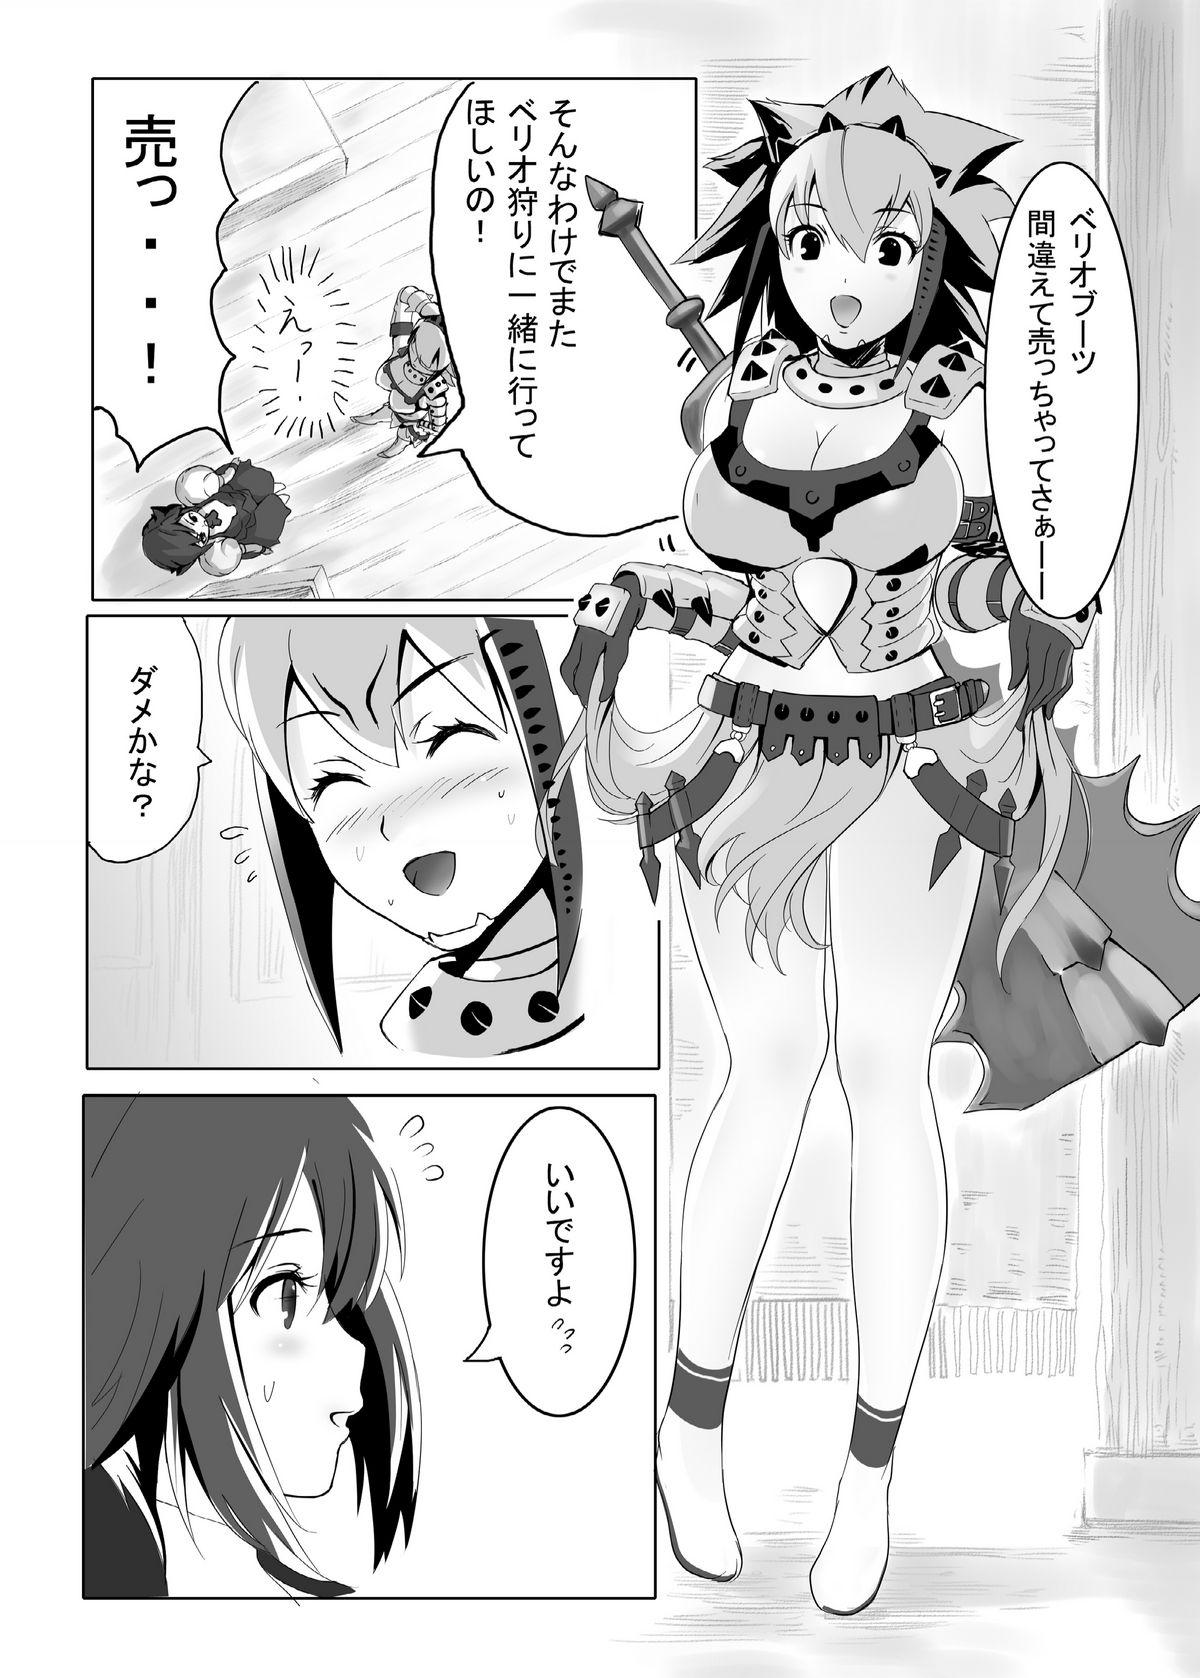 Short hokakuni narimashita 3 - Monster hunter Rica - Page 7